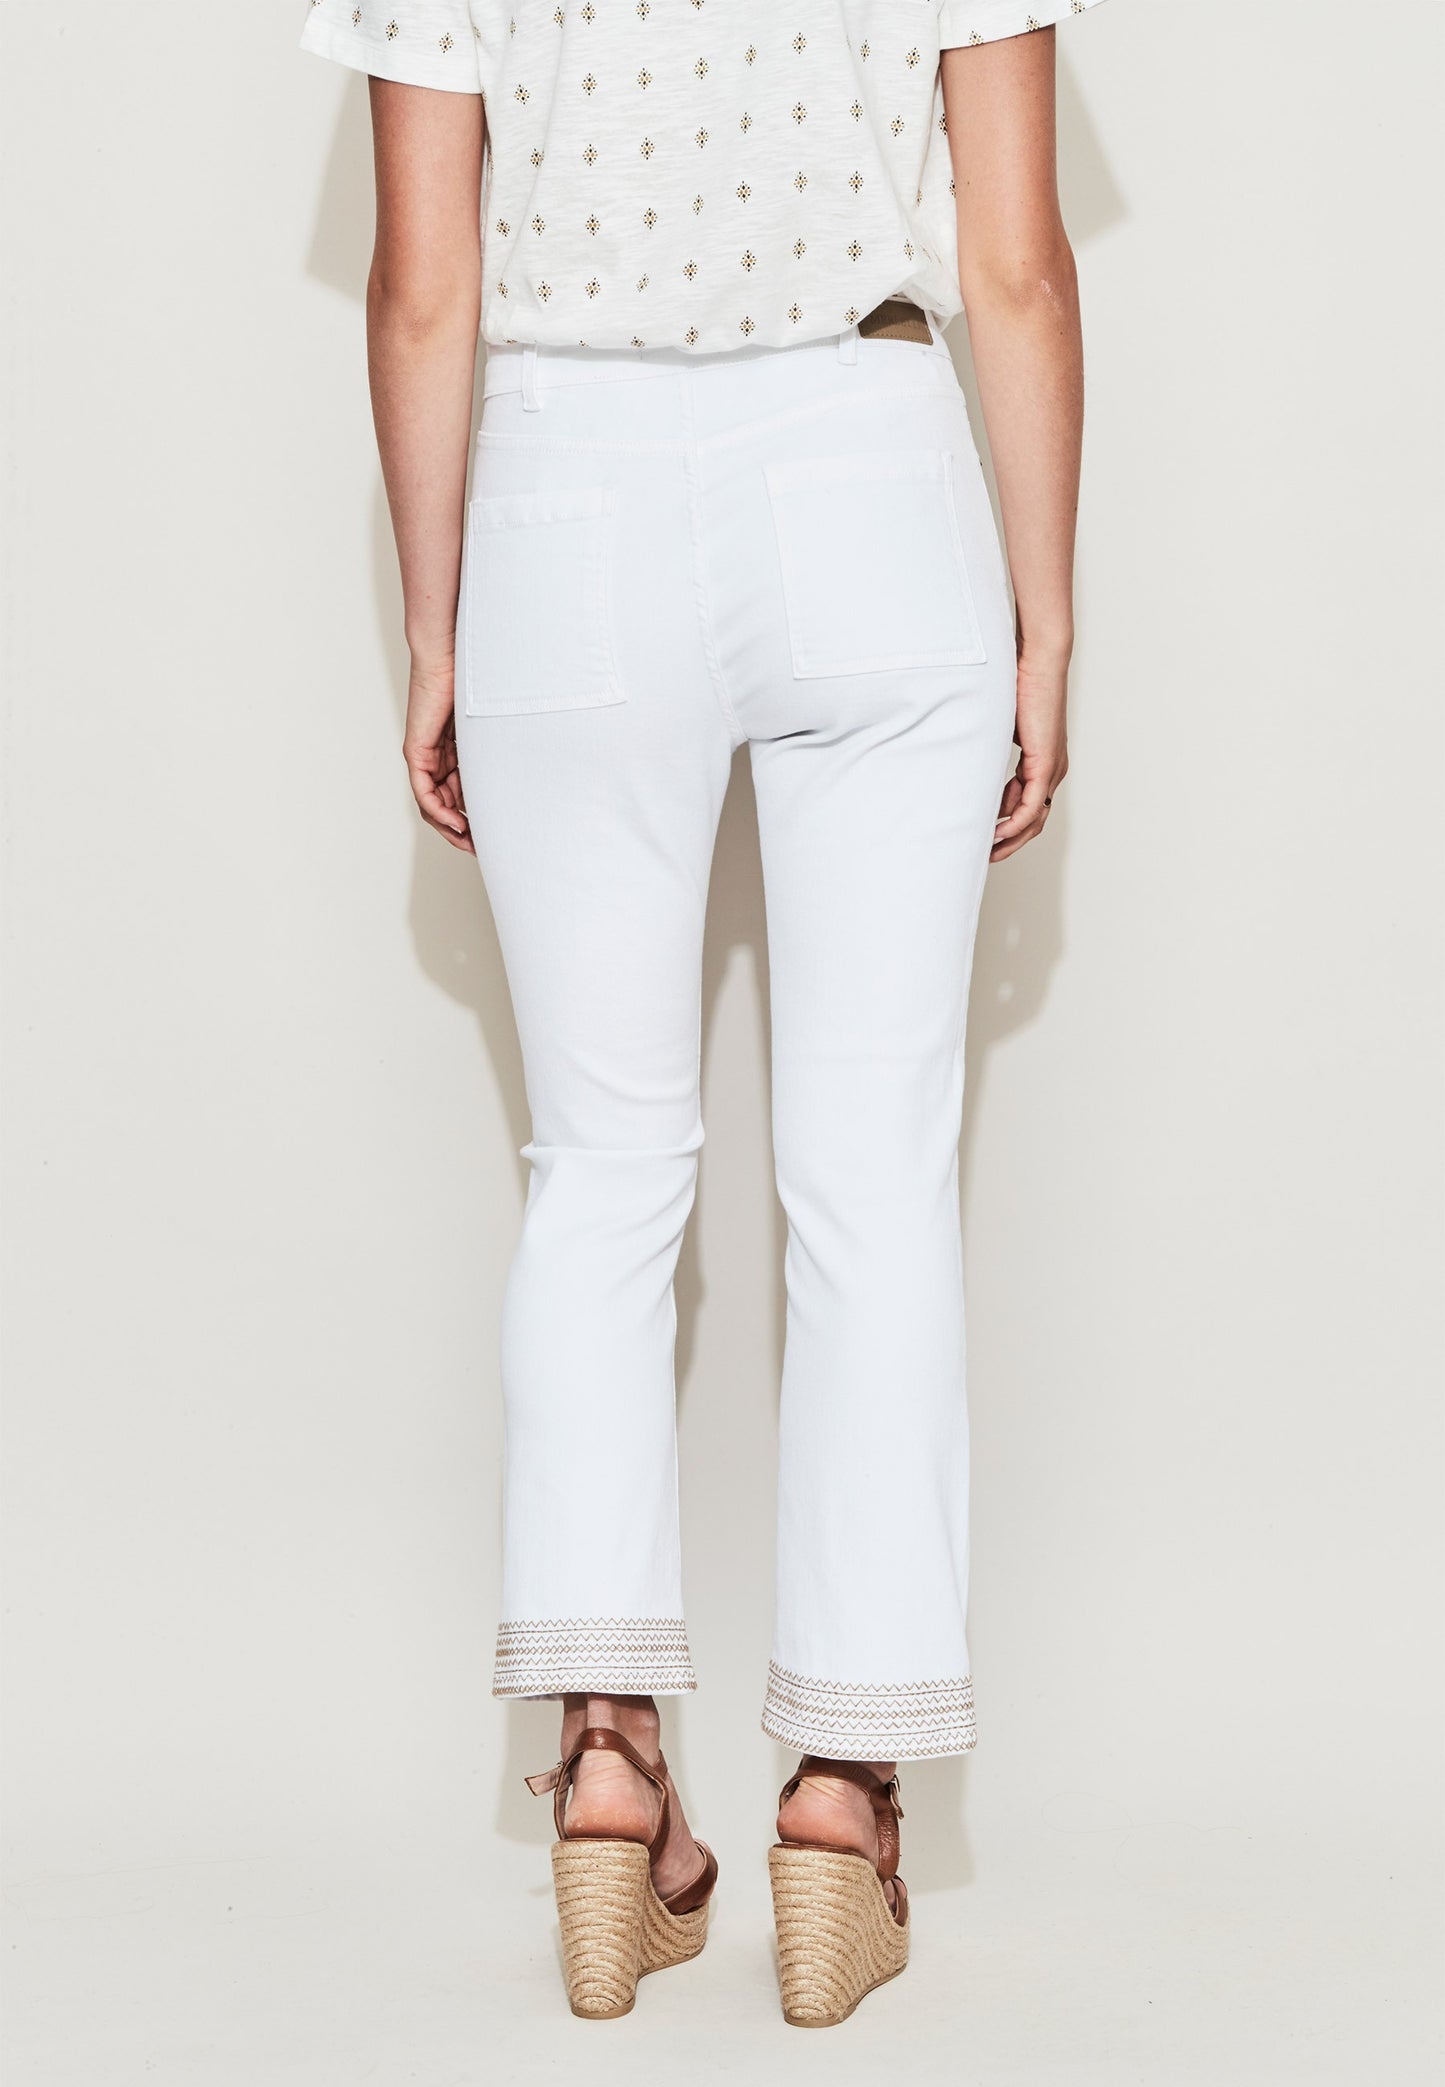 White jeans pantalon bordado bajo